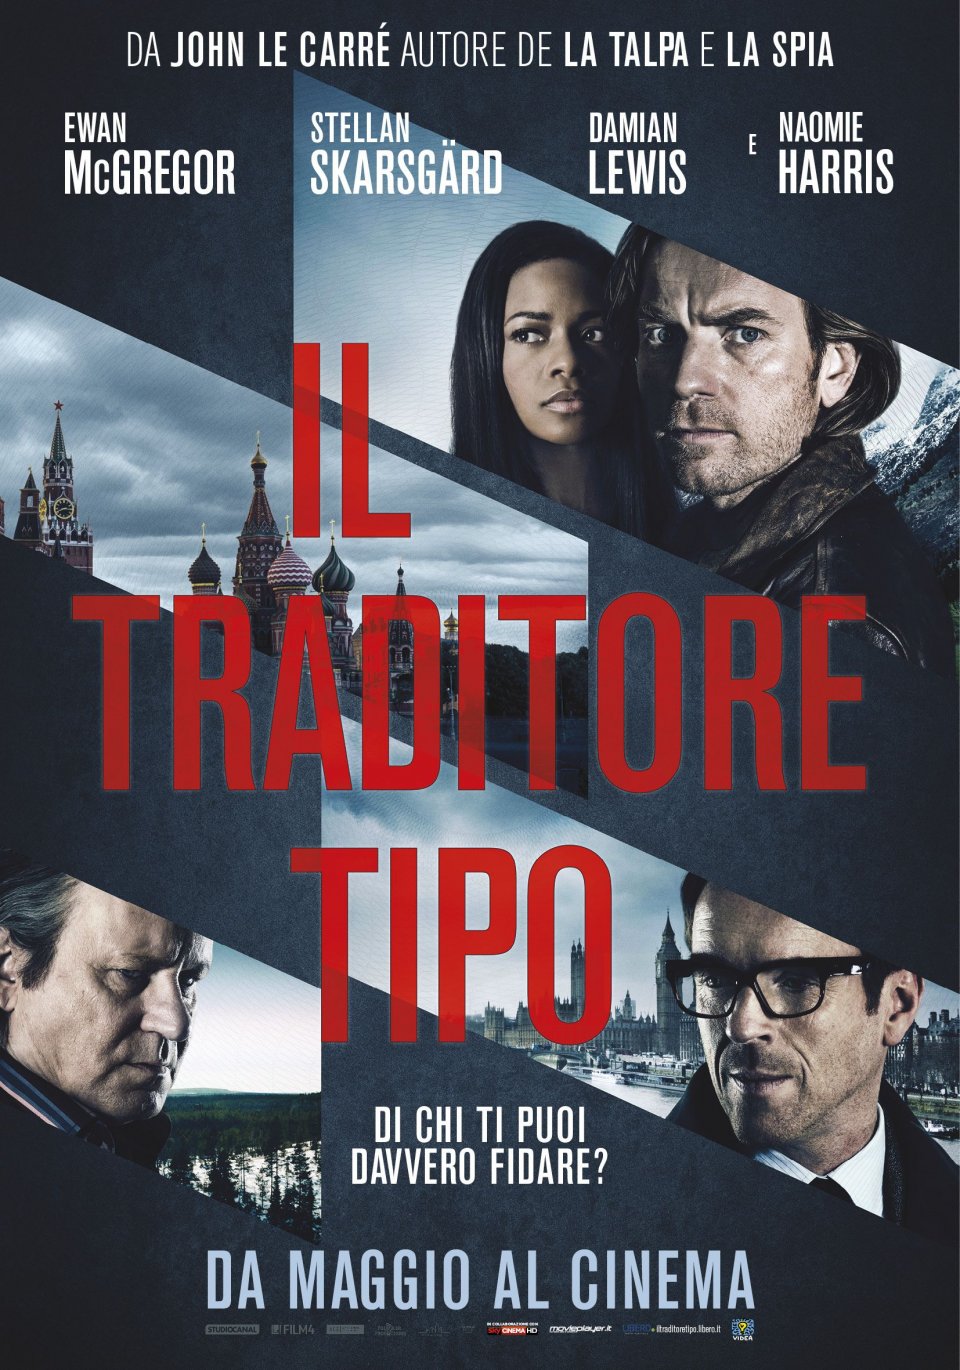 Il traditore tipo, in esclusiva il teaser poster italiano del film